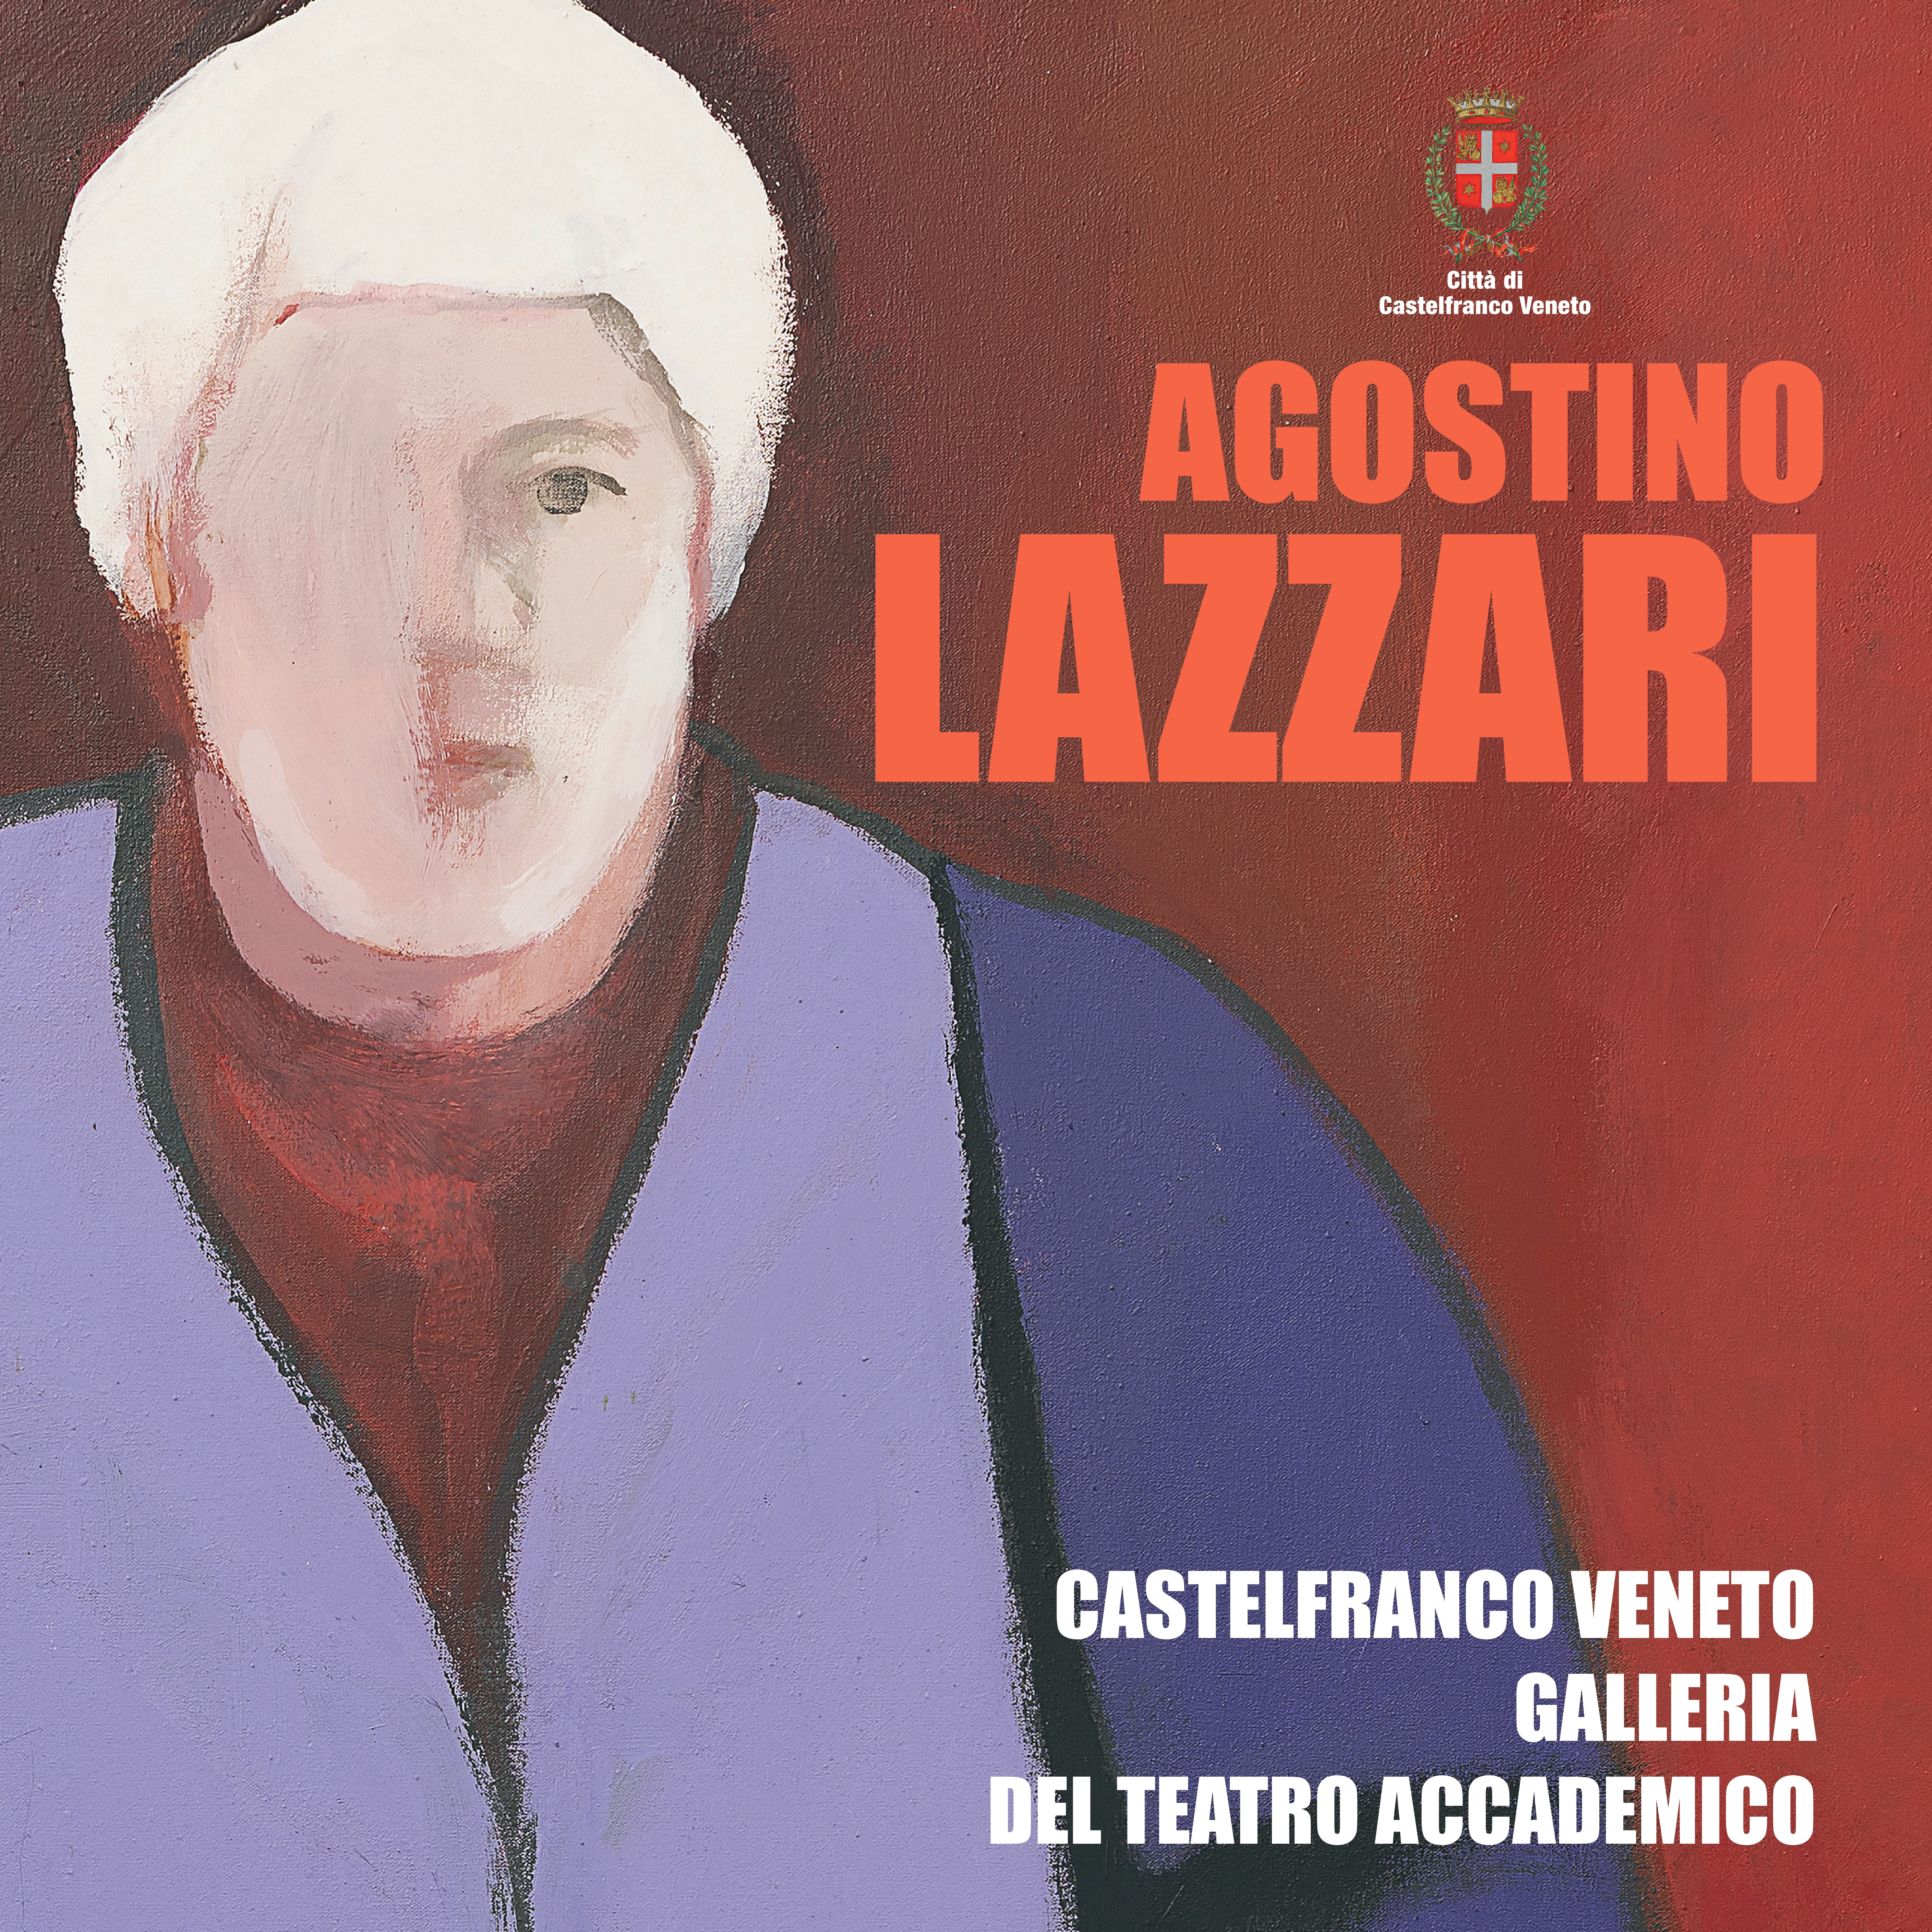 Mostra "Agostino Lazzari"